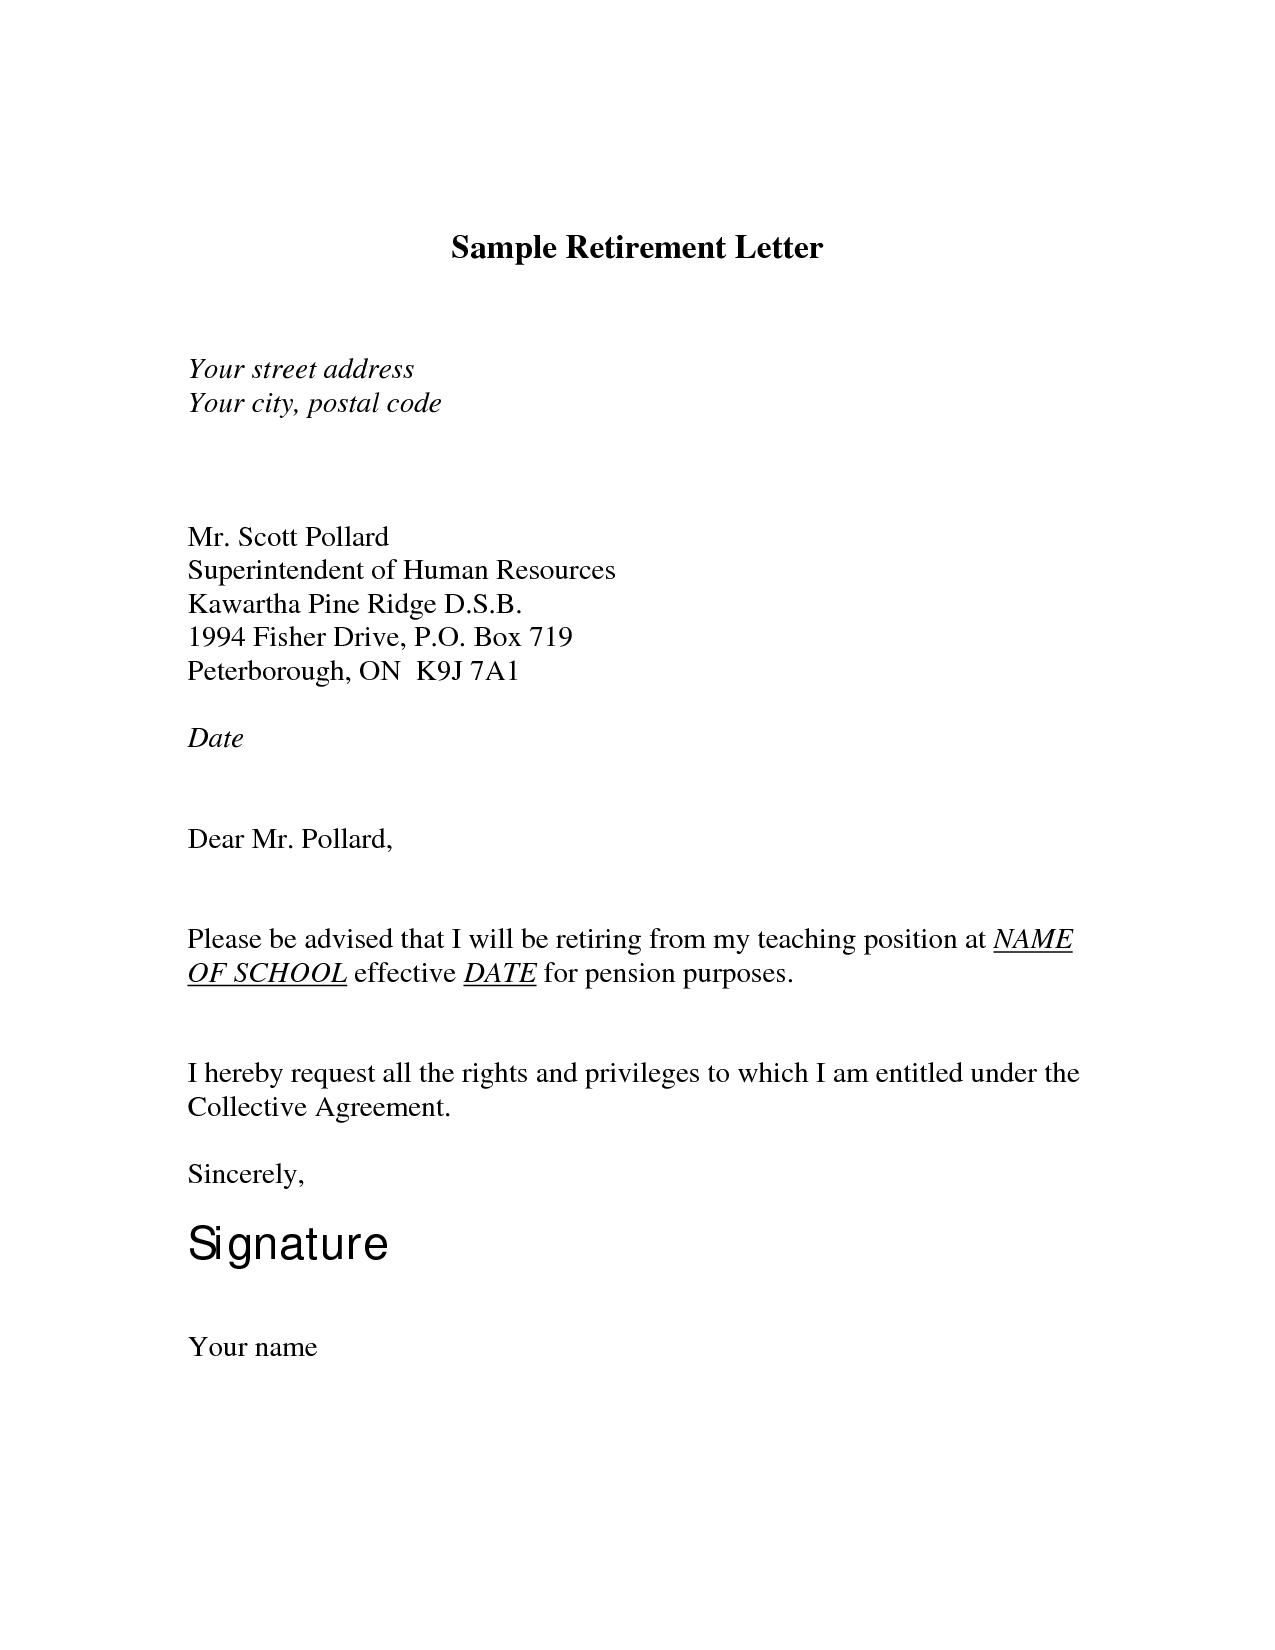 Sample Retirement Letter for Teachers